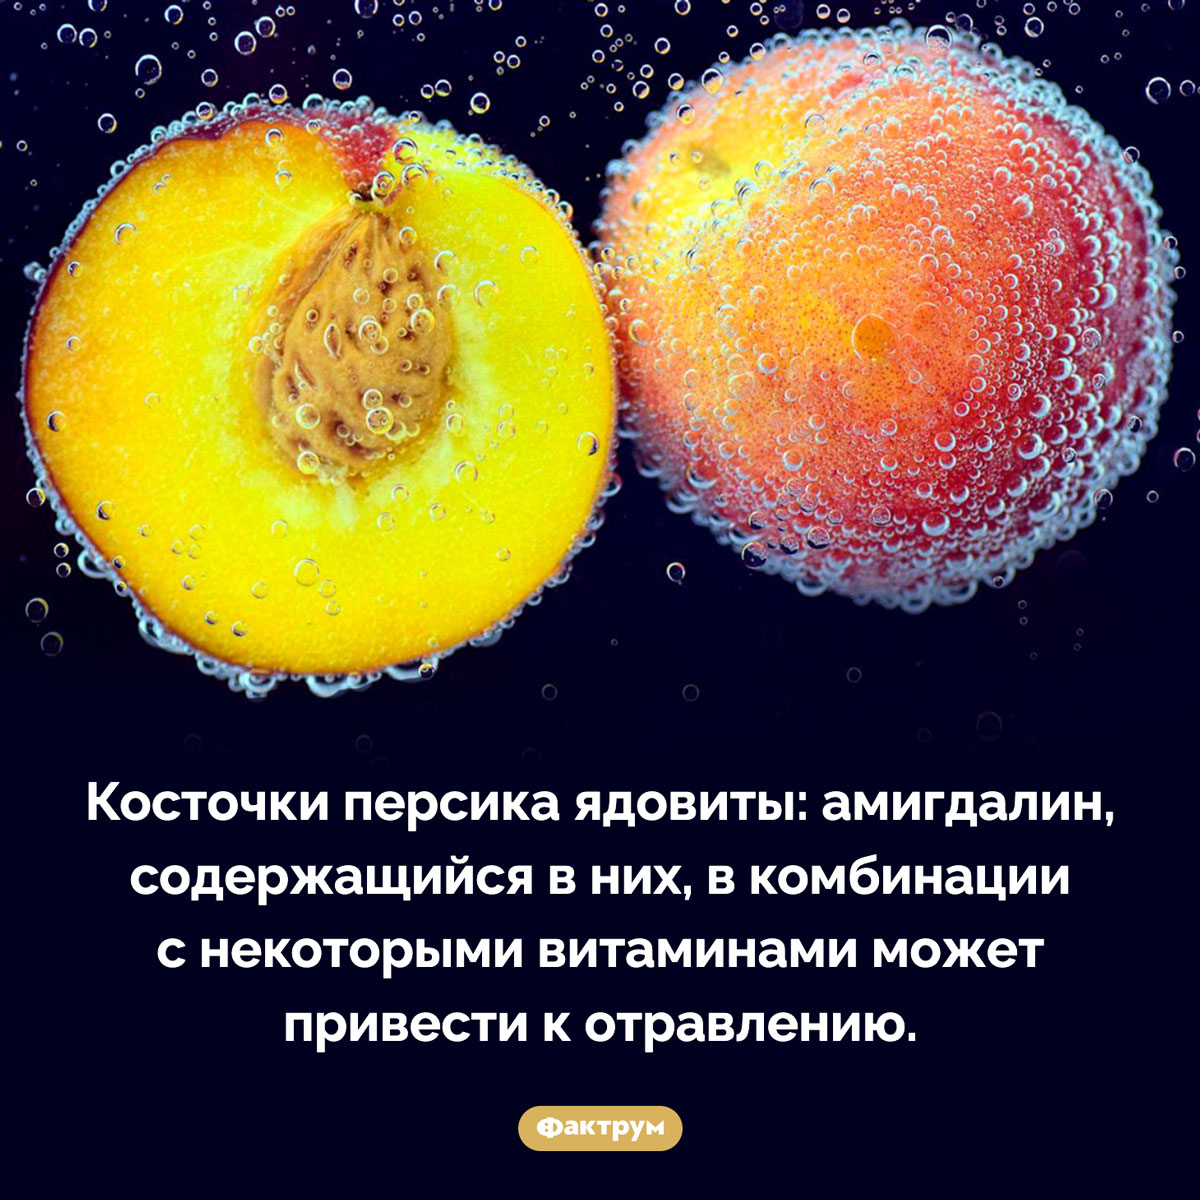 Косточки персика ядовиты. Косточки персика ядовиты: амигдалин, содержащийся в них, в комбинации с некоторыми витаминами может привести к отравлению.